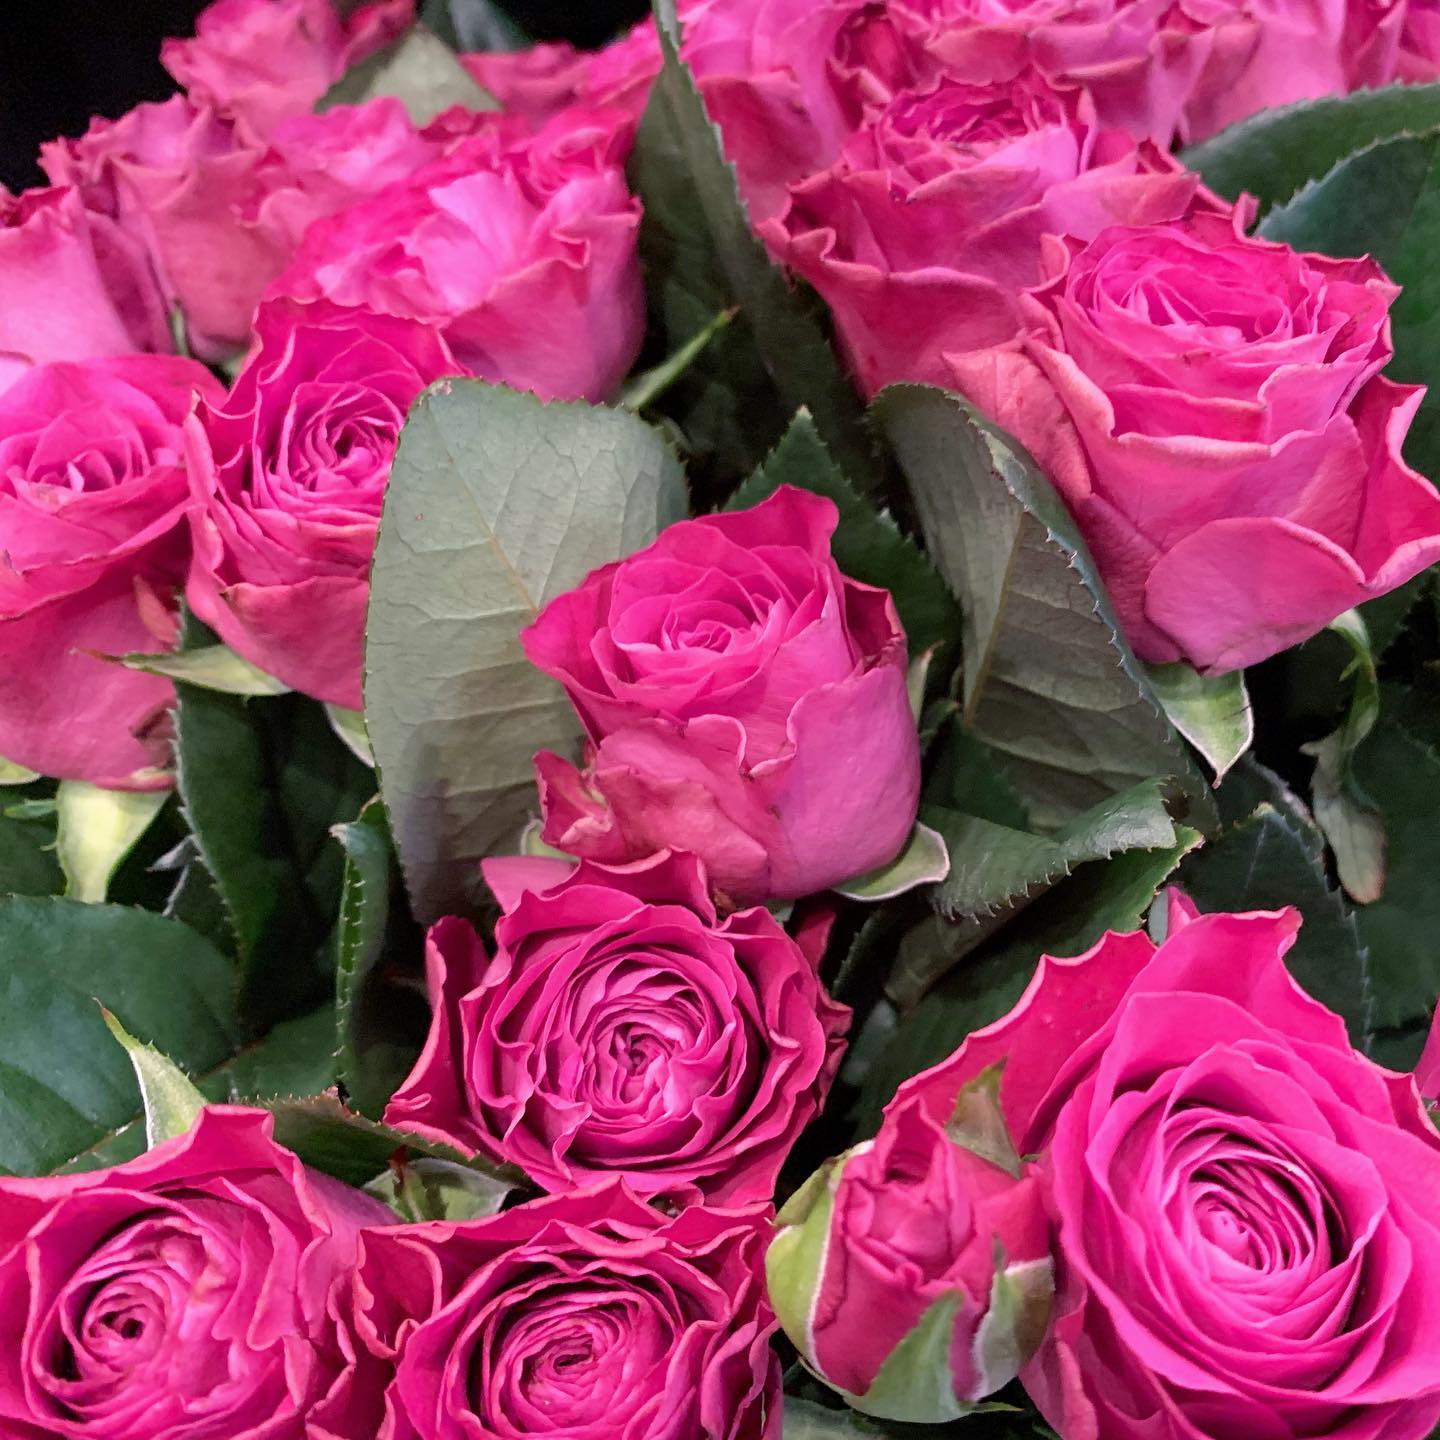 .アンティークのようなくすみ色の薔薇をはじめ、可愛いお花たくさん入荷しましたっ❣️変わった形のひまわりも入ってます本日もお待ちしてます！@monceaufleurs_jiyugaoka #モンソーフルール自由が丘店